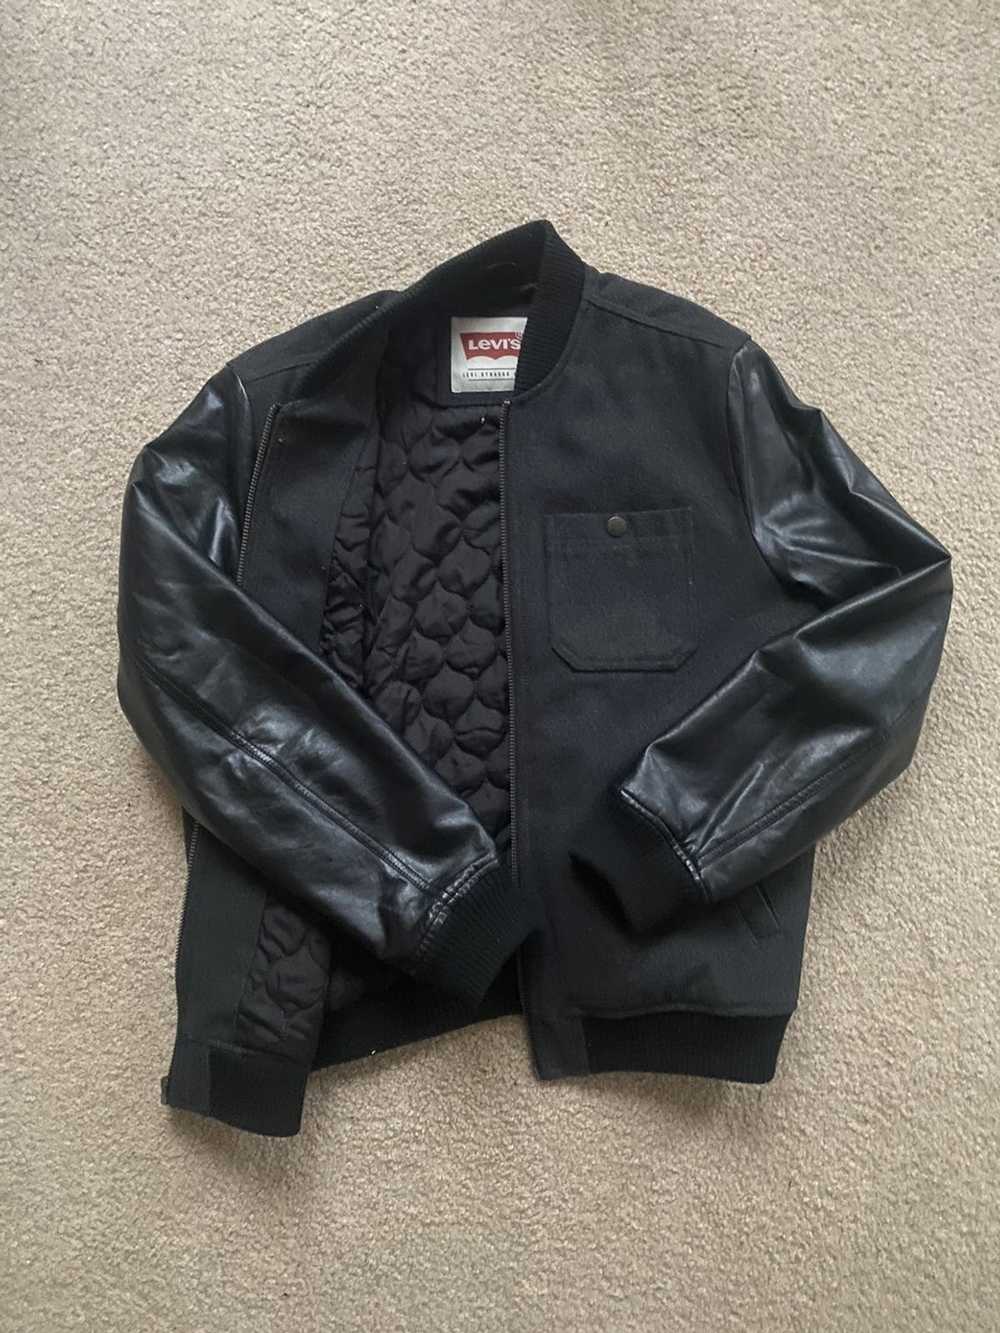 Levi's Varsity jacket - image 2